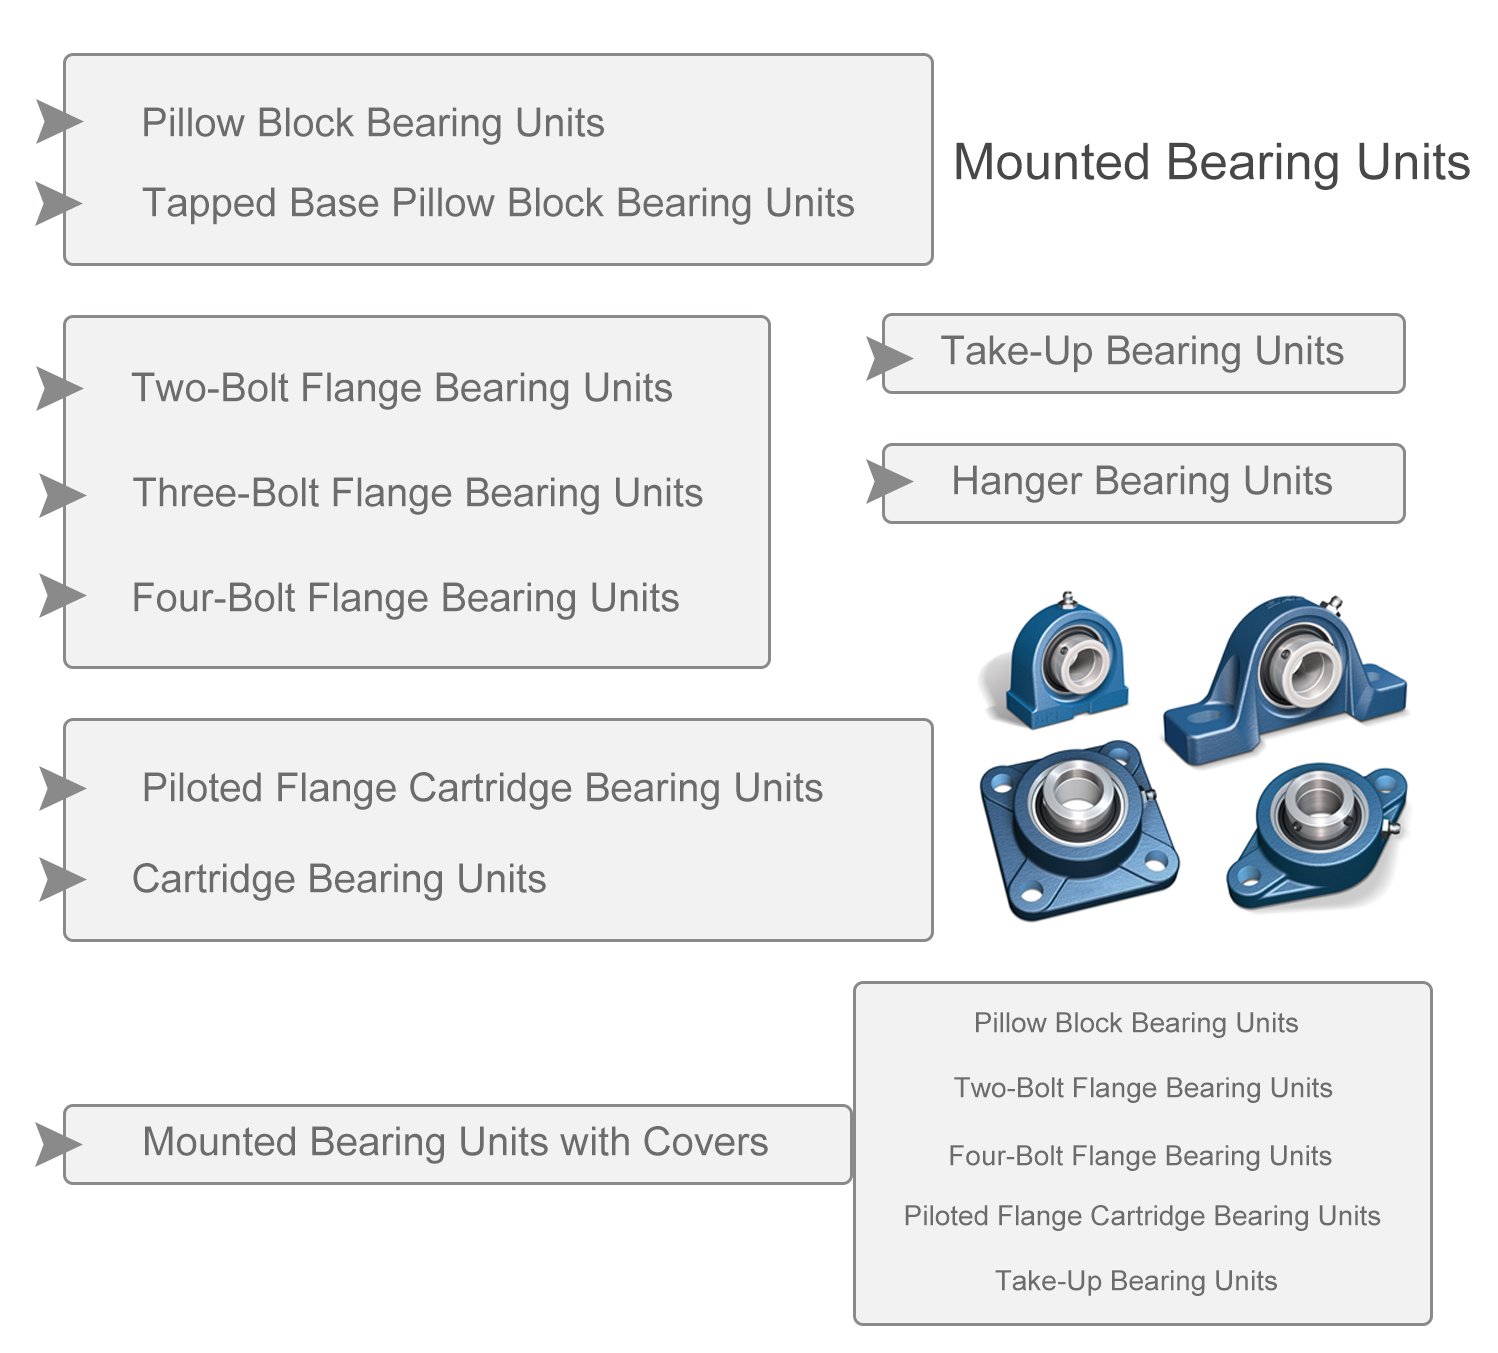 Types of mounted bearings